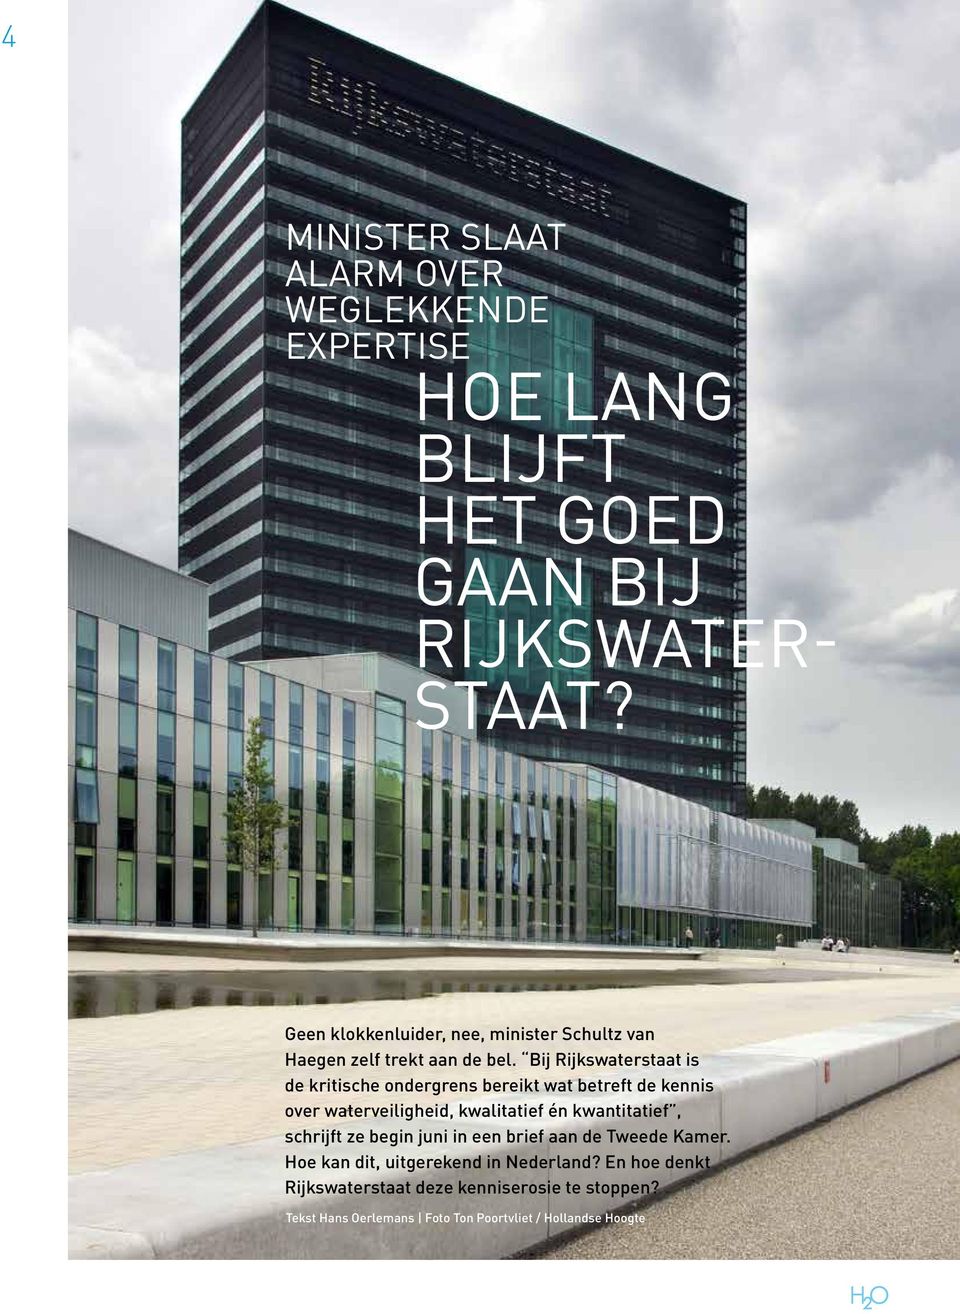 Bij Rijkswaterstaat is de kritische ondergrens bereikt wat betreft de kennis over waterveiligheid, kwalitatief én kwantitatief,